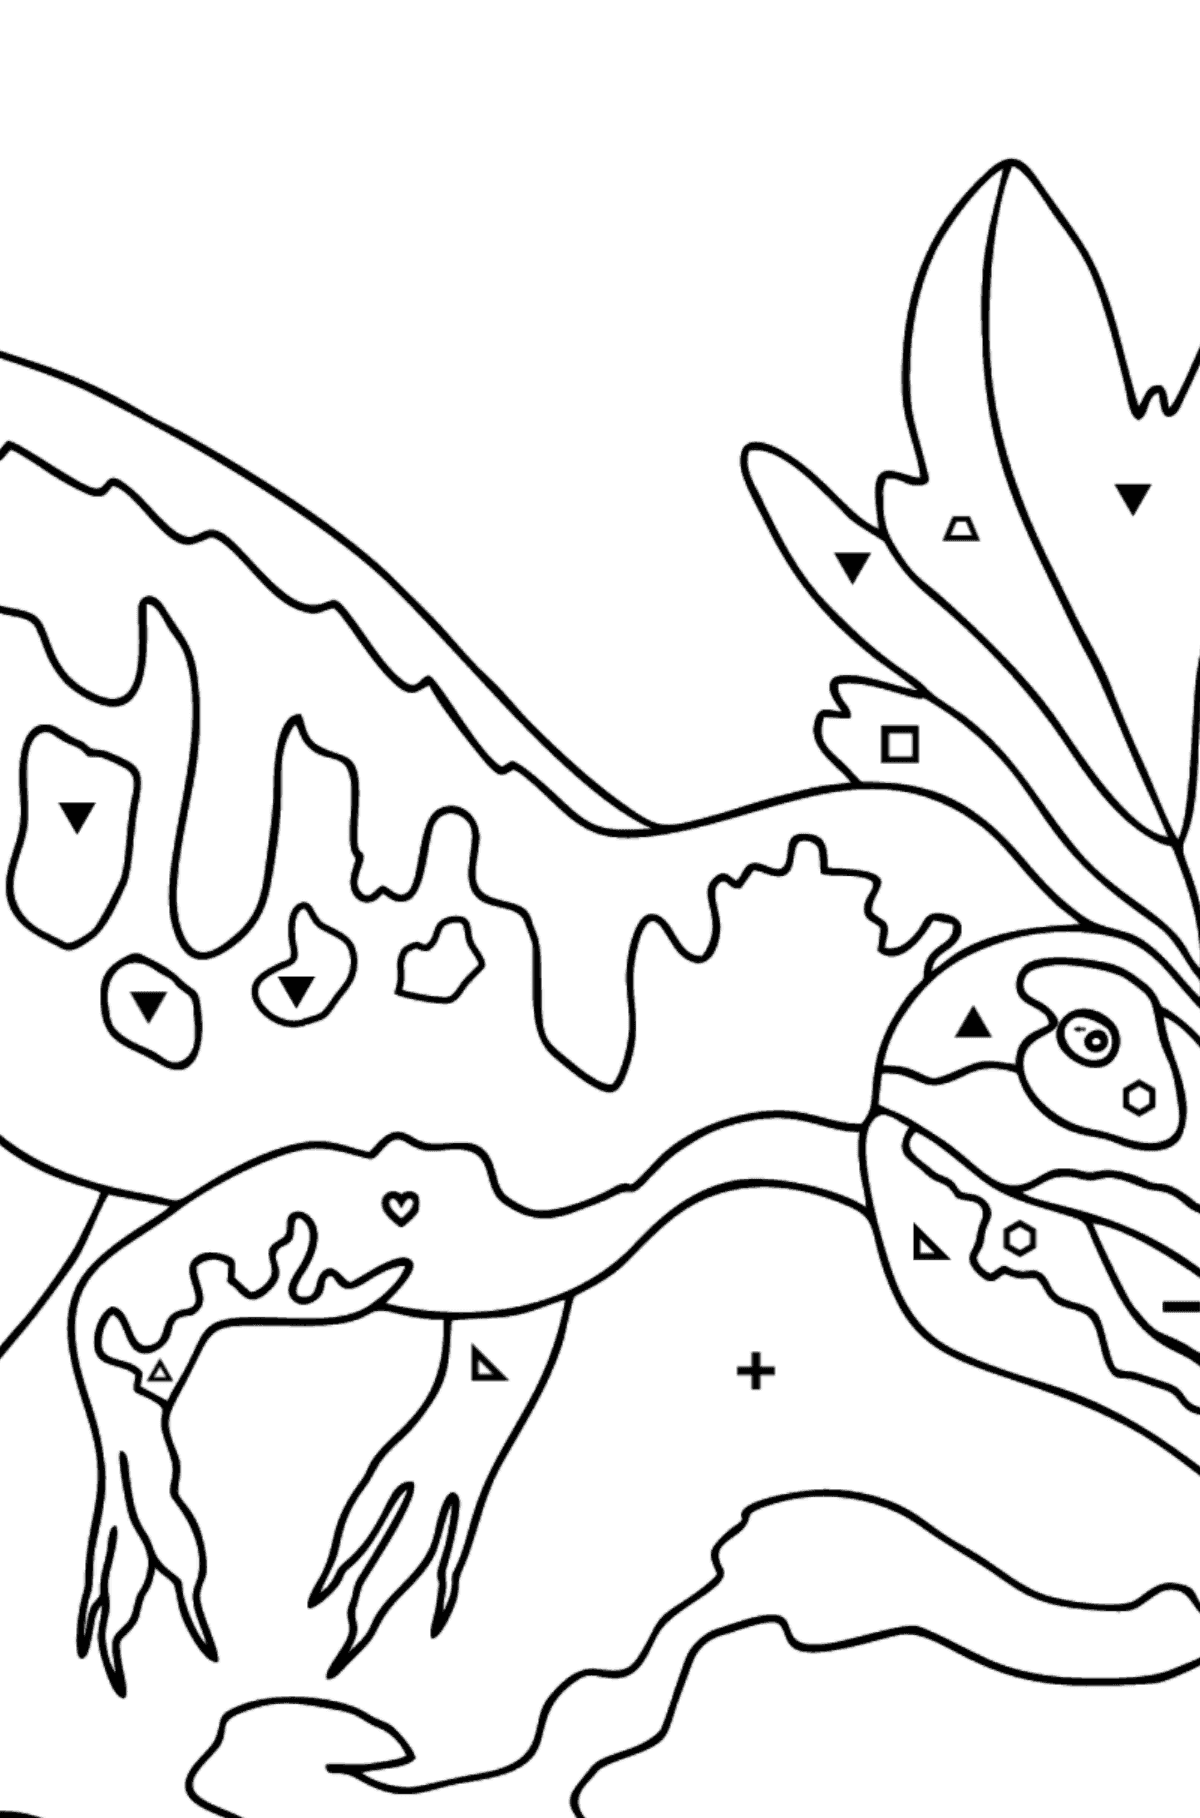 Målarbild allosaurus (svår) - Färgläggning efter symboler och av geometriska figurer För barn